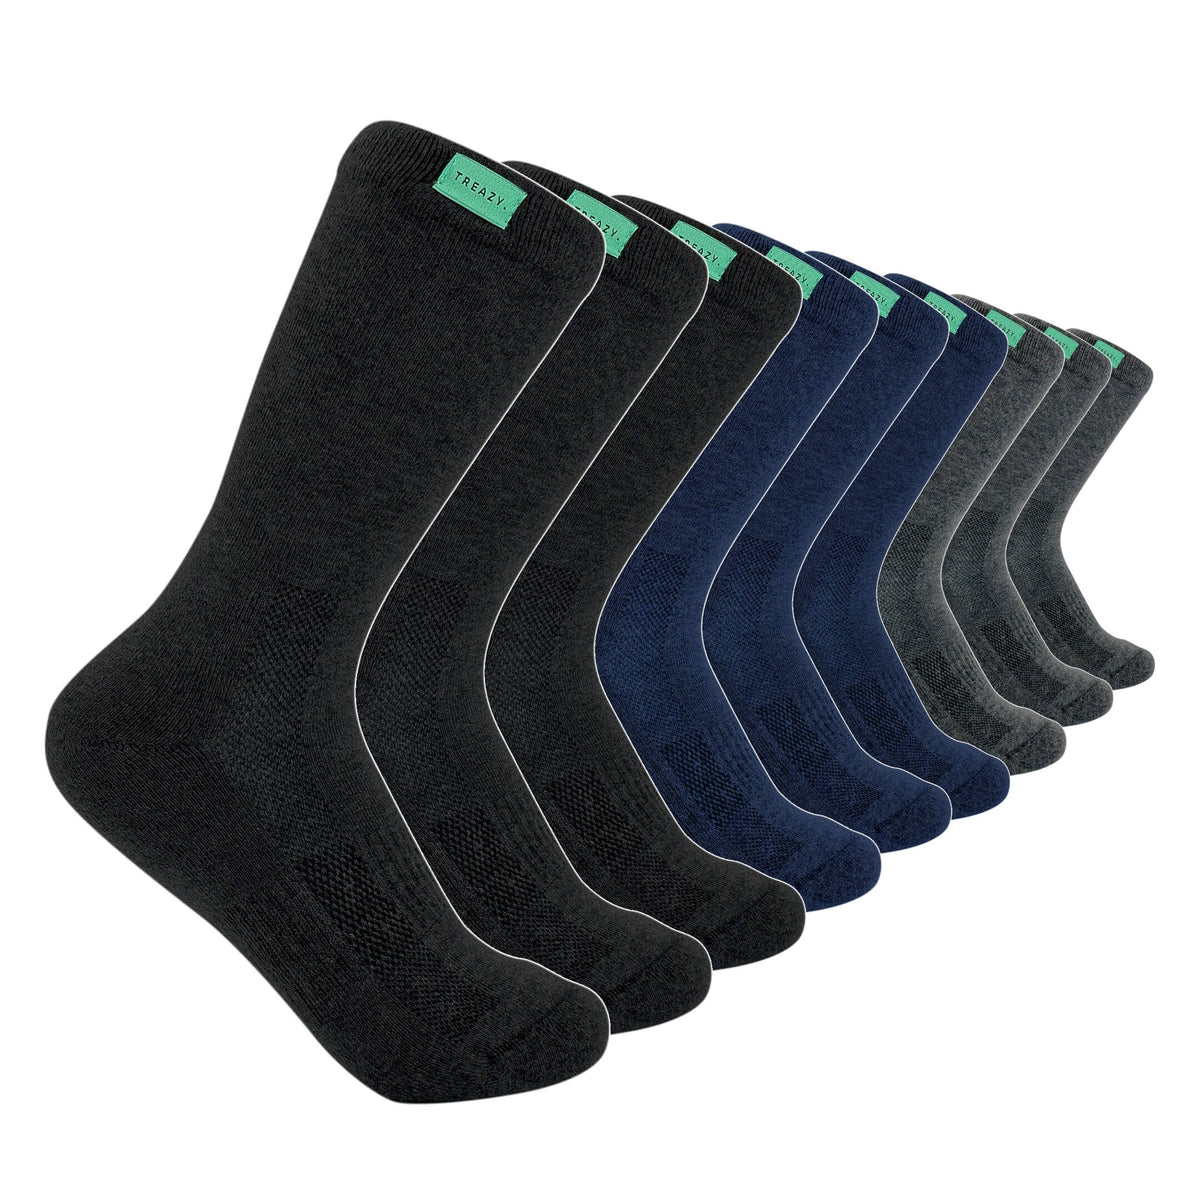 Business Socken Farbmix (9 Paar)